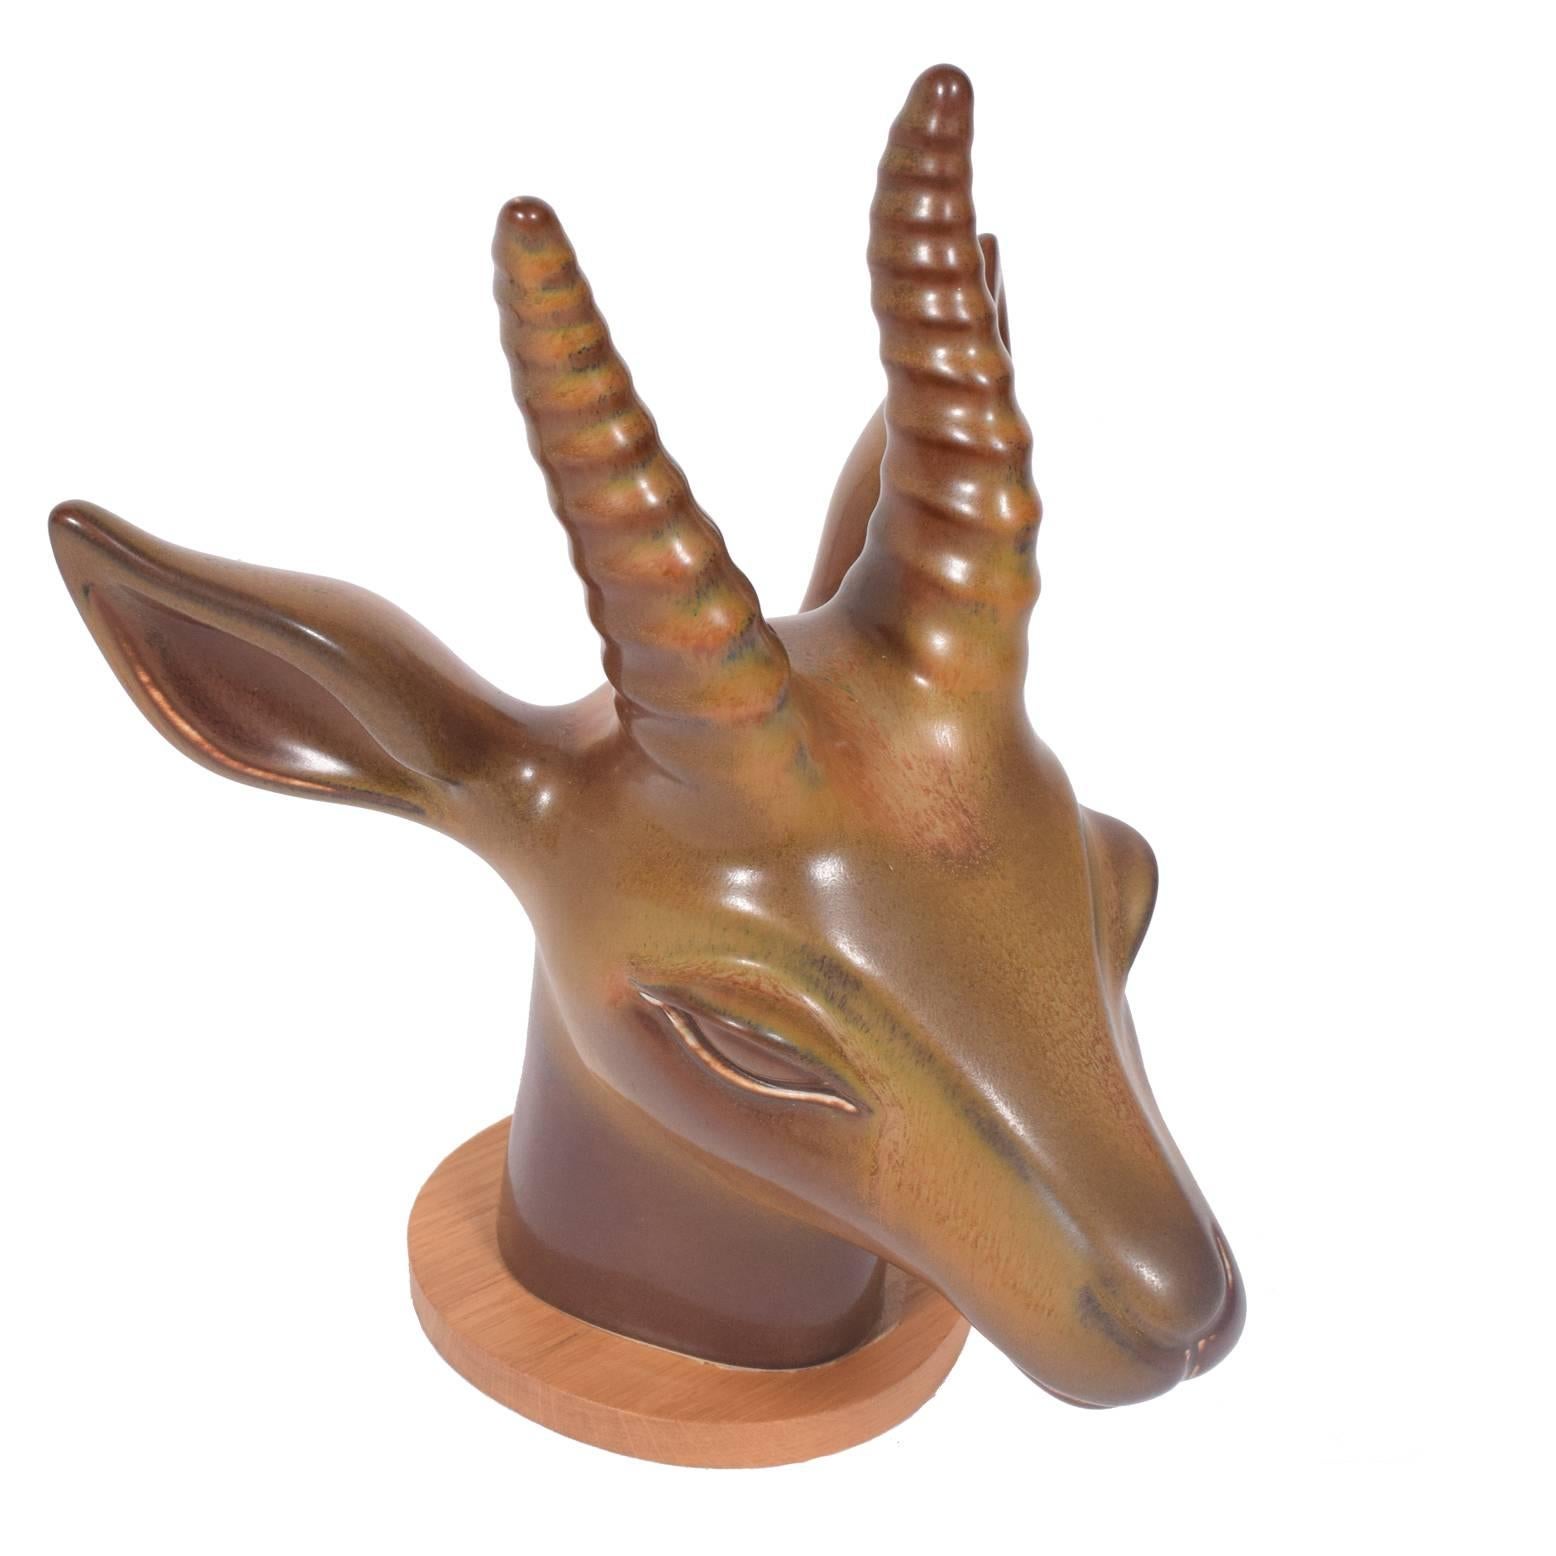 Magnifique figure en grès émaillé représentant une tête d'antilope, conçue par Gunnar Nylund pour Rörstrand.

Mesures : Hauteur avec base 13